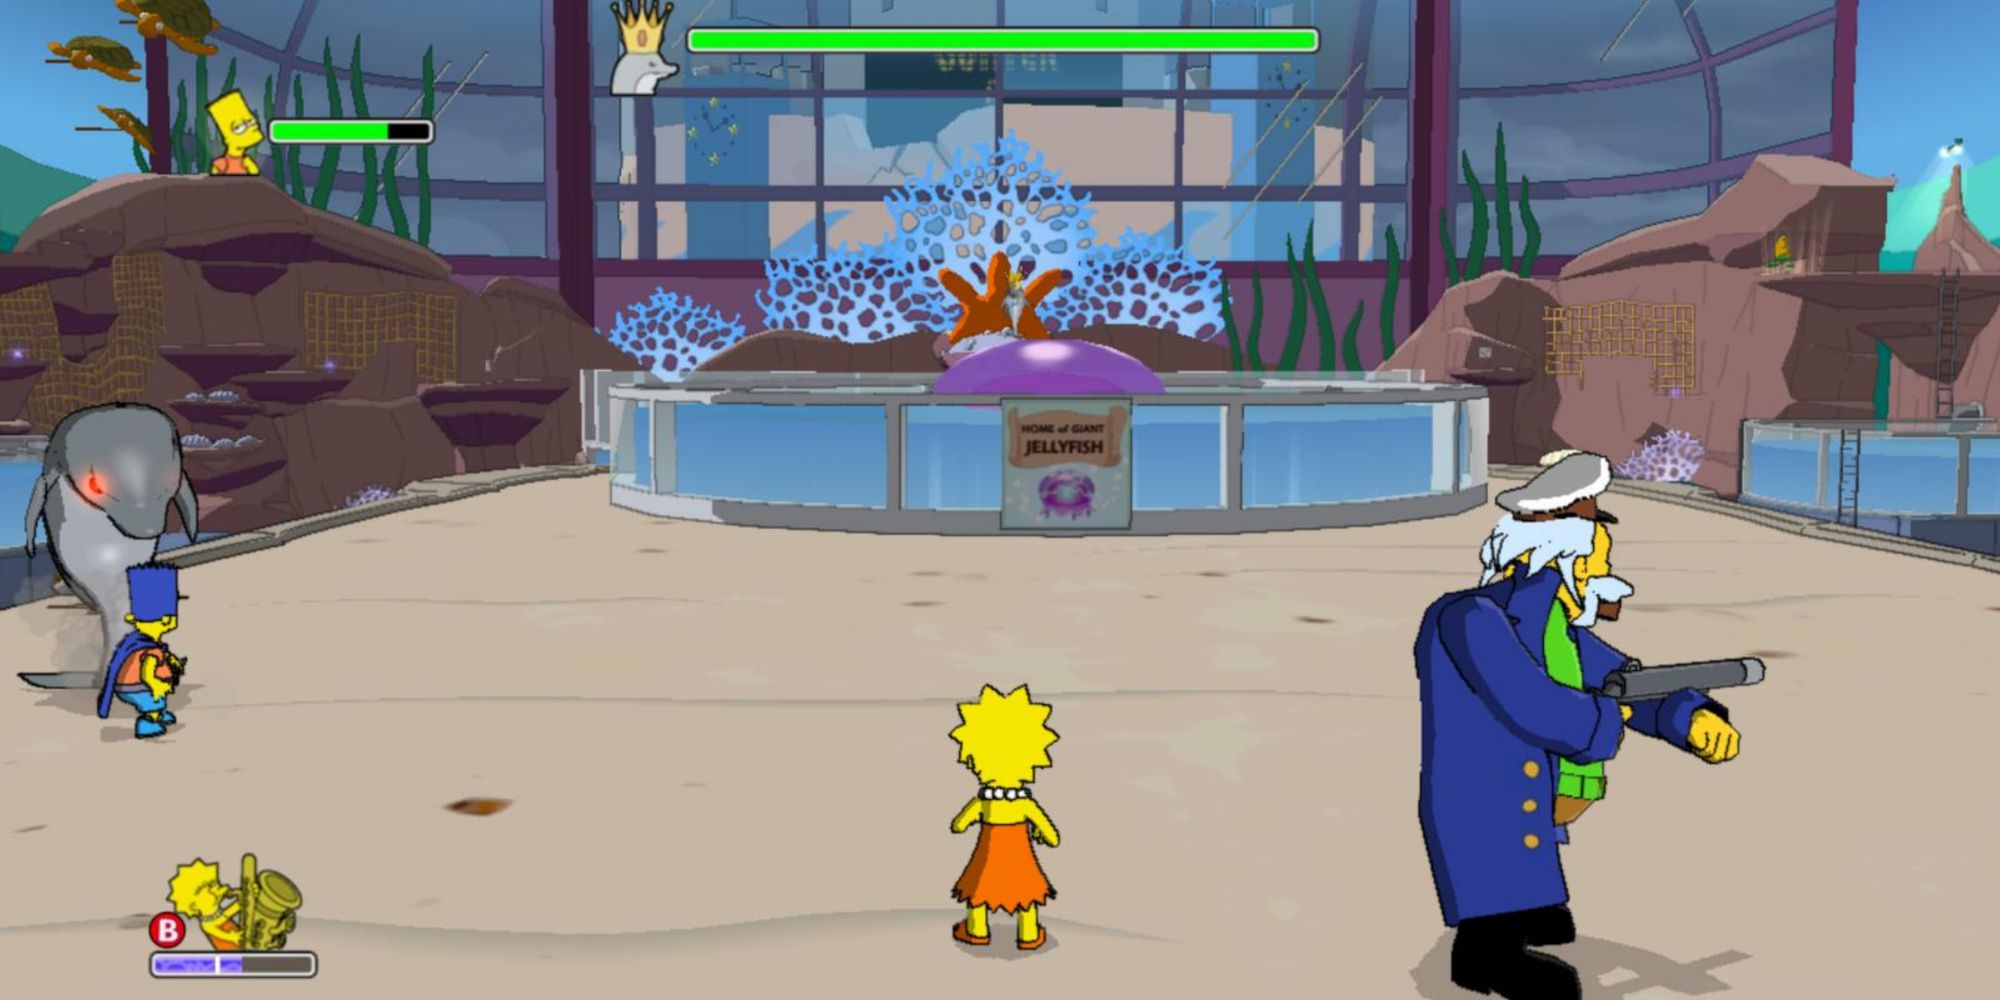 Combattre un boss dans The Simpsons Game